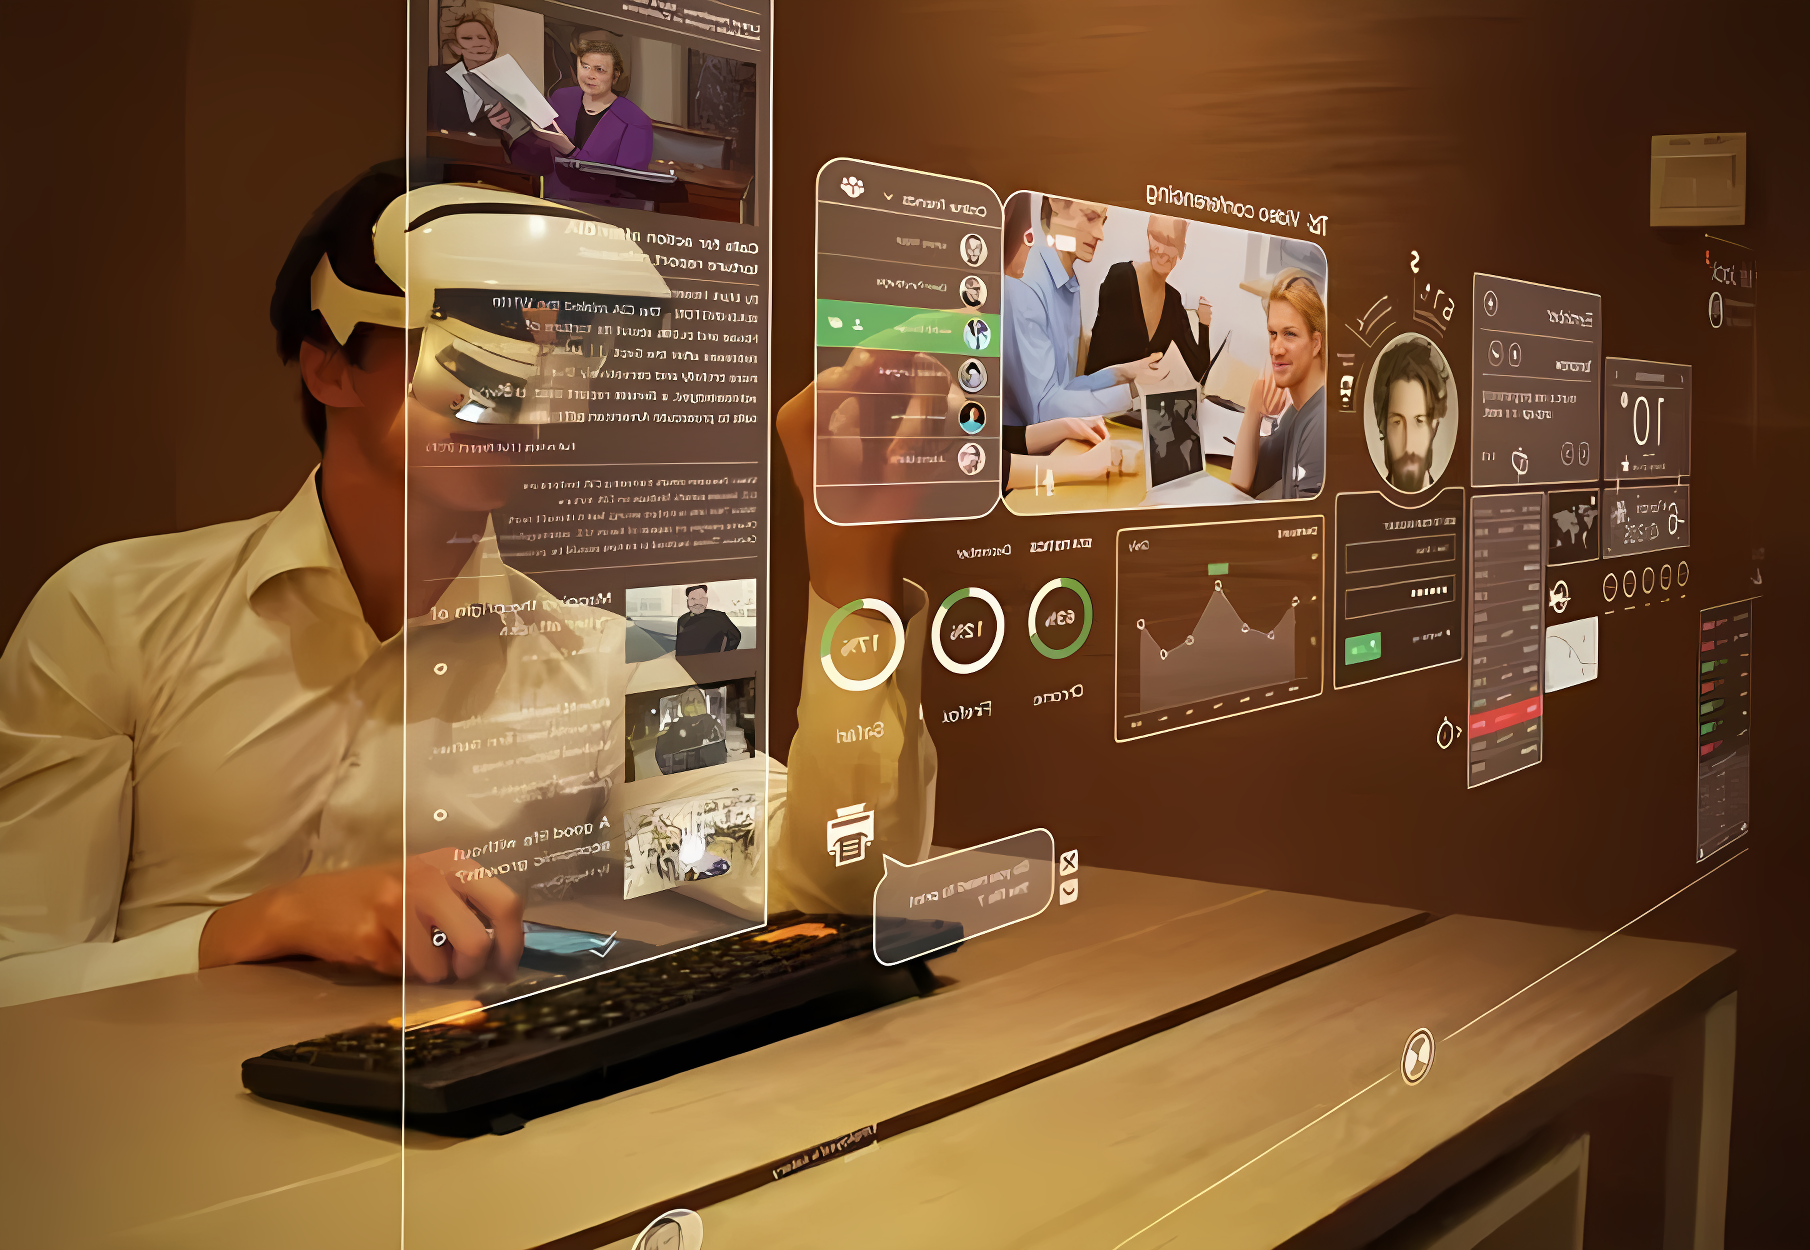 图片展示一位男士佩戴头戴式设备，面前是多个悬浮虚拟屏幕，正通过键盘与这些屏幕上的信息互动。